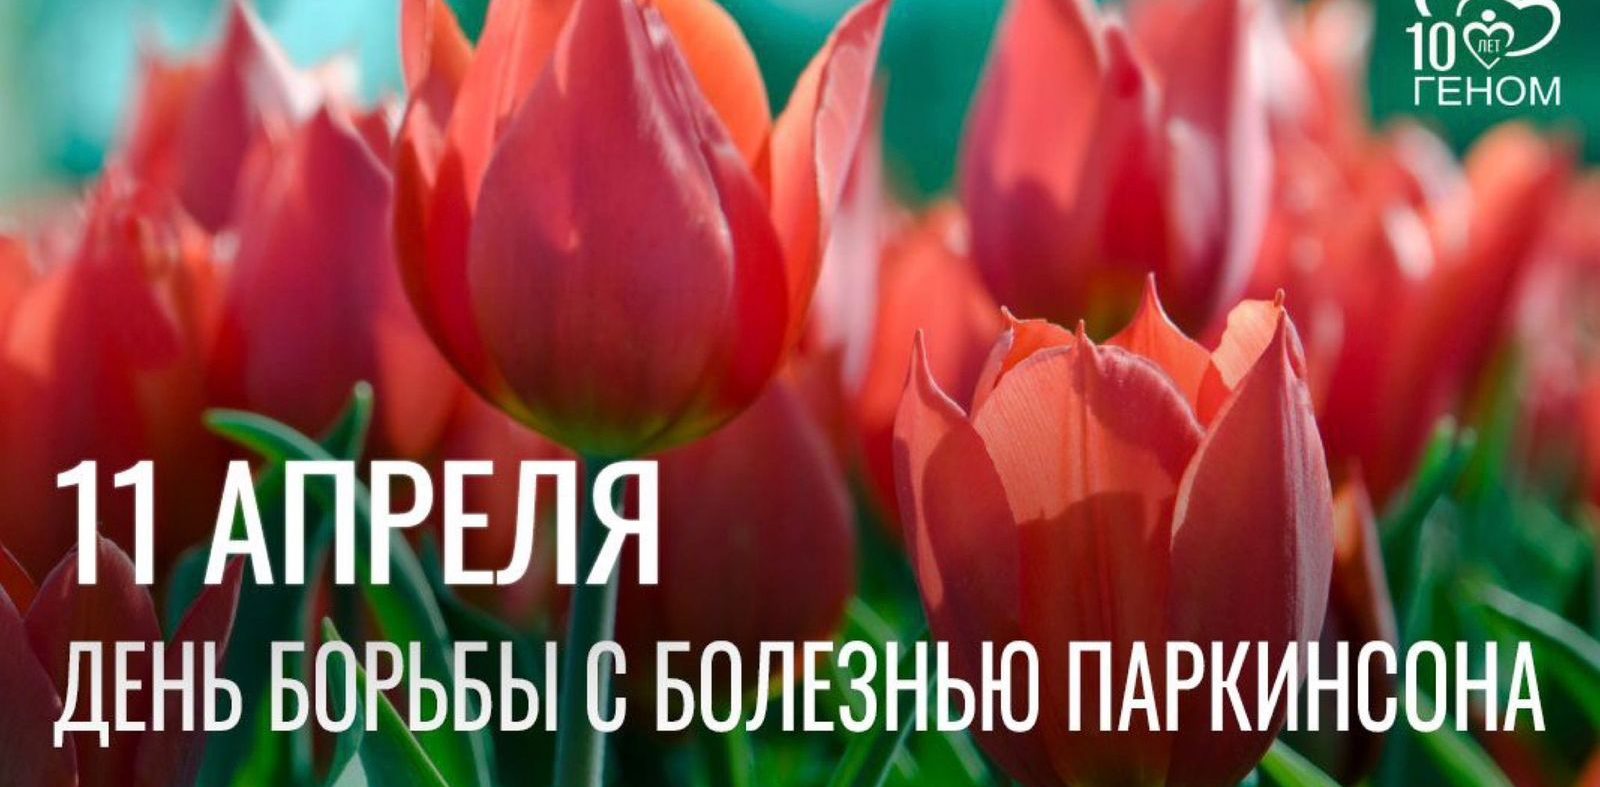 6 апреля в 13.00 «Школа для пациентов с болезнью Паркинсона» Санкт-Петербурга приглашает всех на встречу добрых и неравнодушных людей